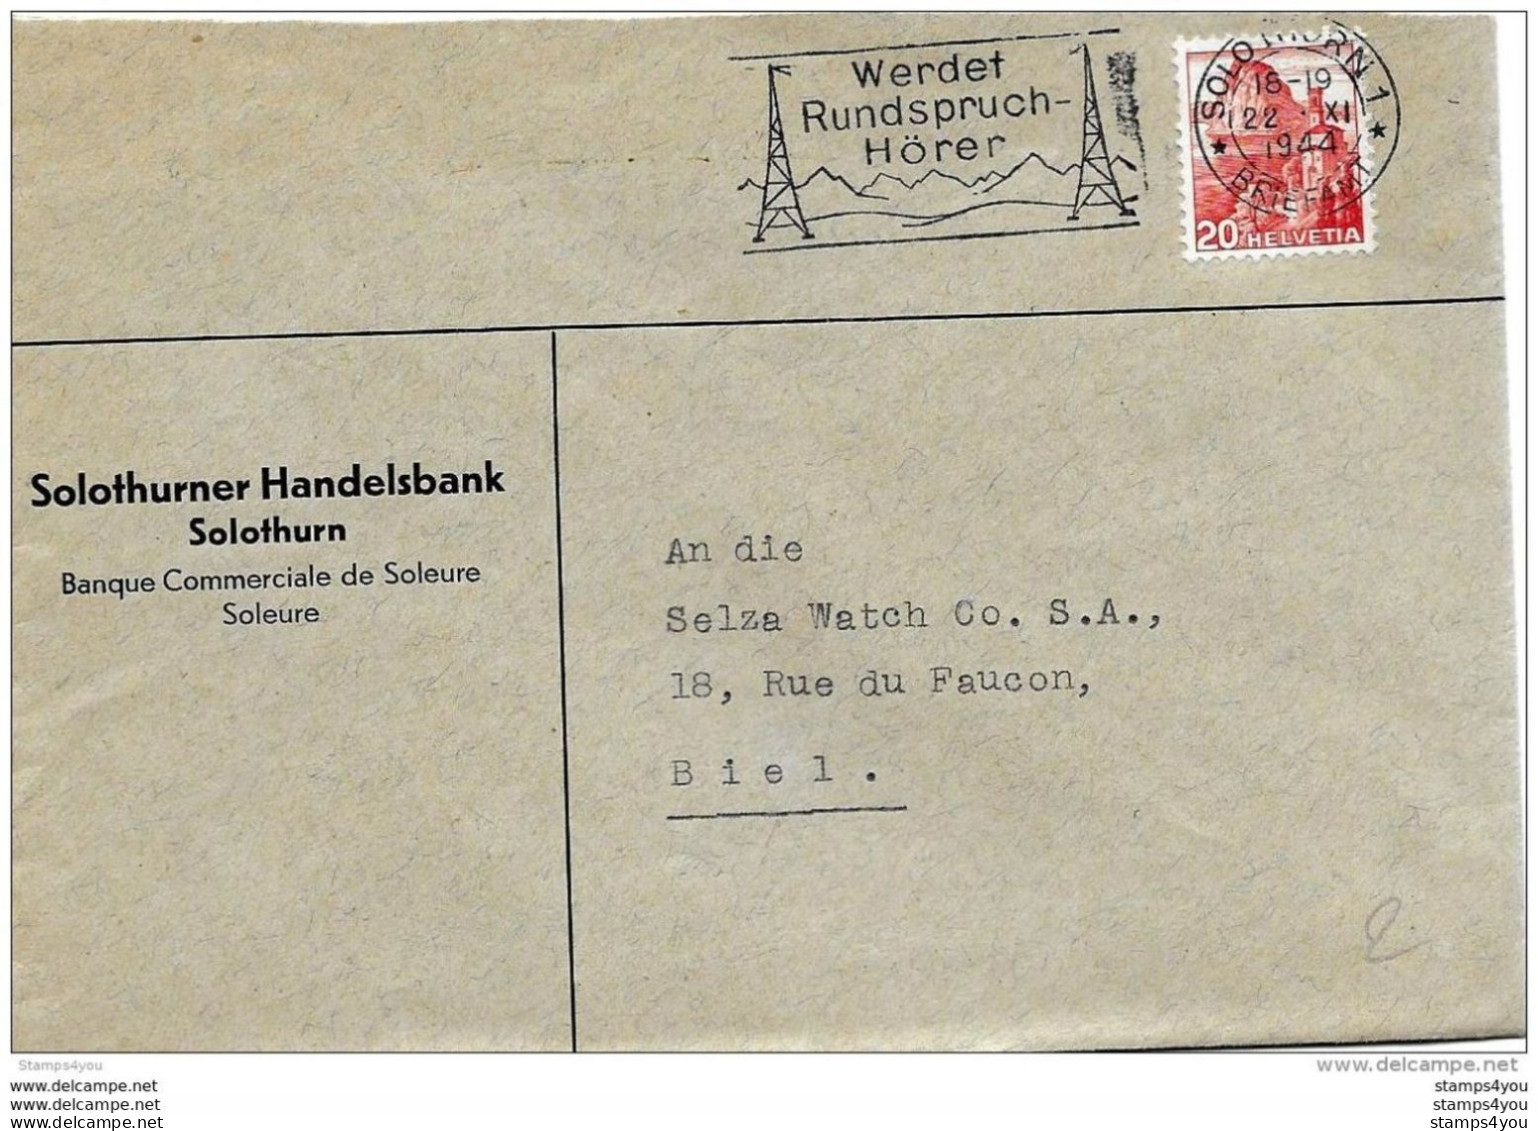 76 - 32 - Enveloppe Avec Oblit Mécanique "Werdet Rundspruch Hörer" 1944 - Poststempel